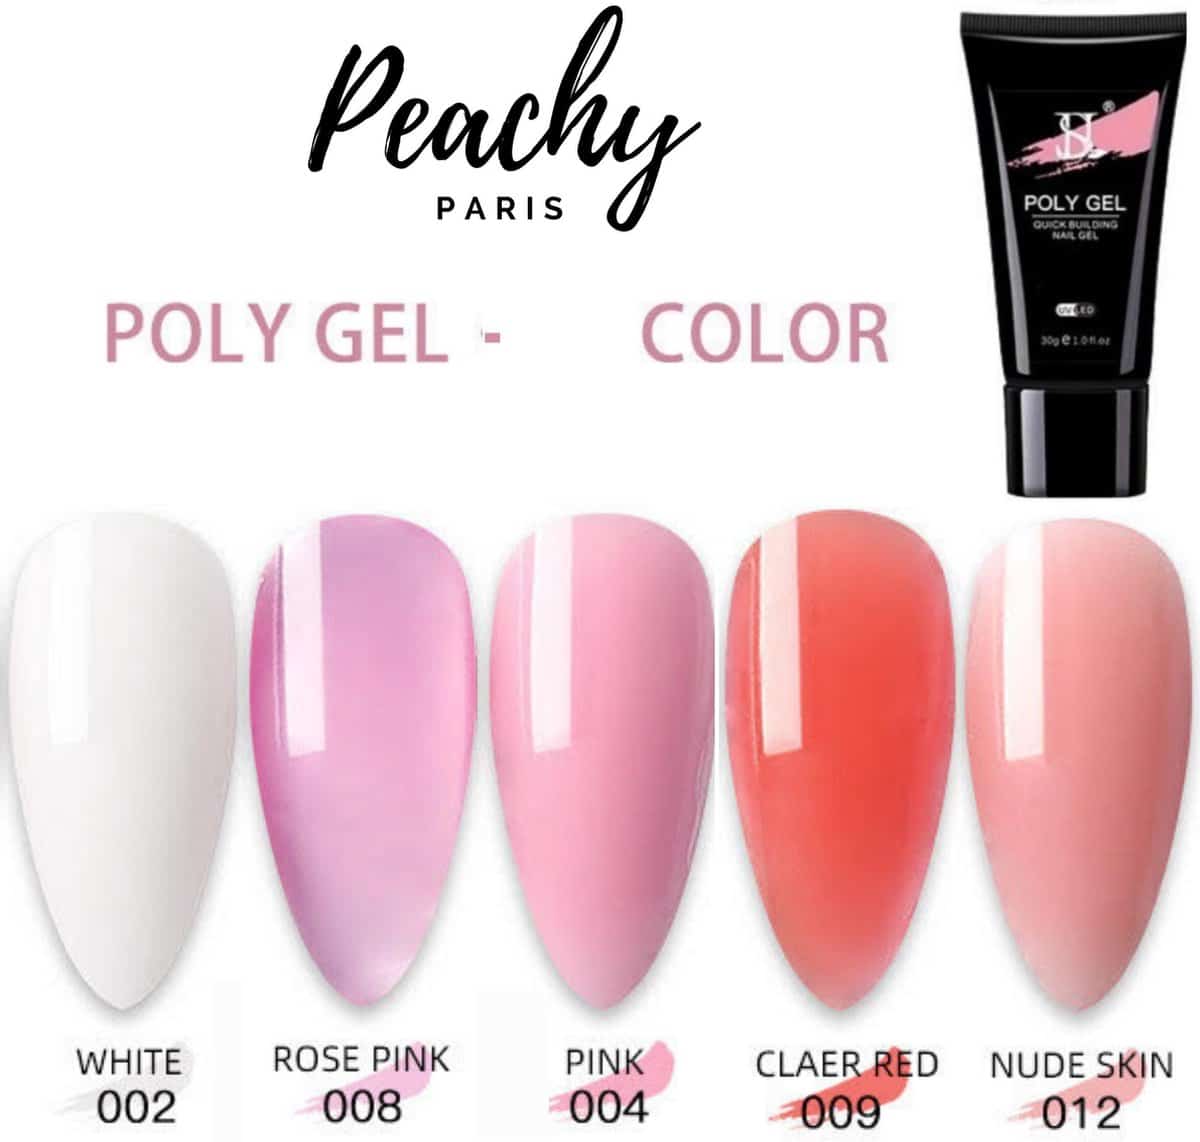 PEACHY ® Paris POLYGEL Acrylgel - 5 Kit : Red/Pink/Nude/ Rose Pink 30gr - - Gelish - Nagellak - Gel Nagellak - Nagel verlenging - Acryl Nagels - Alles over gelnagels